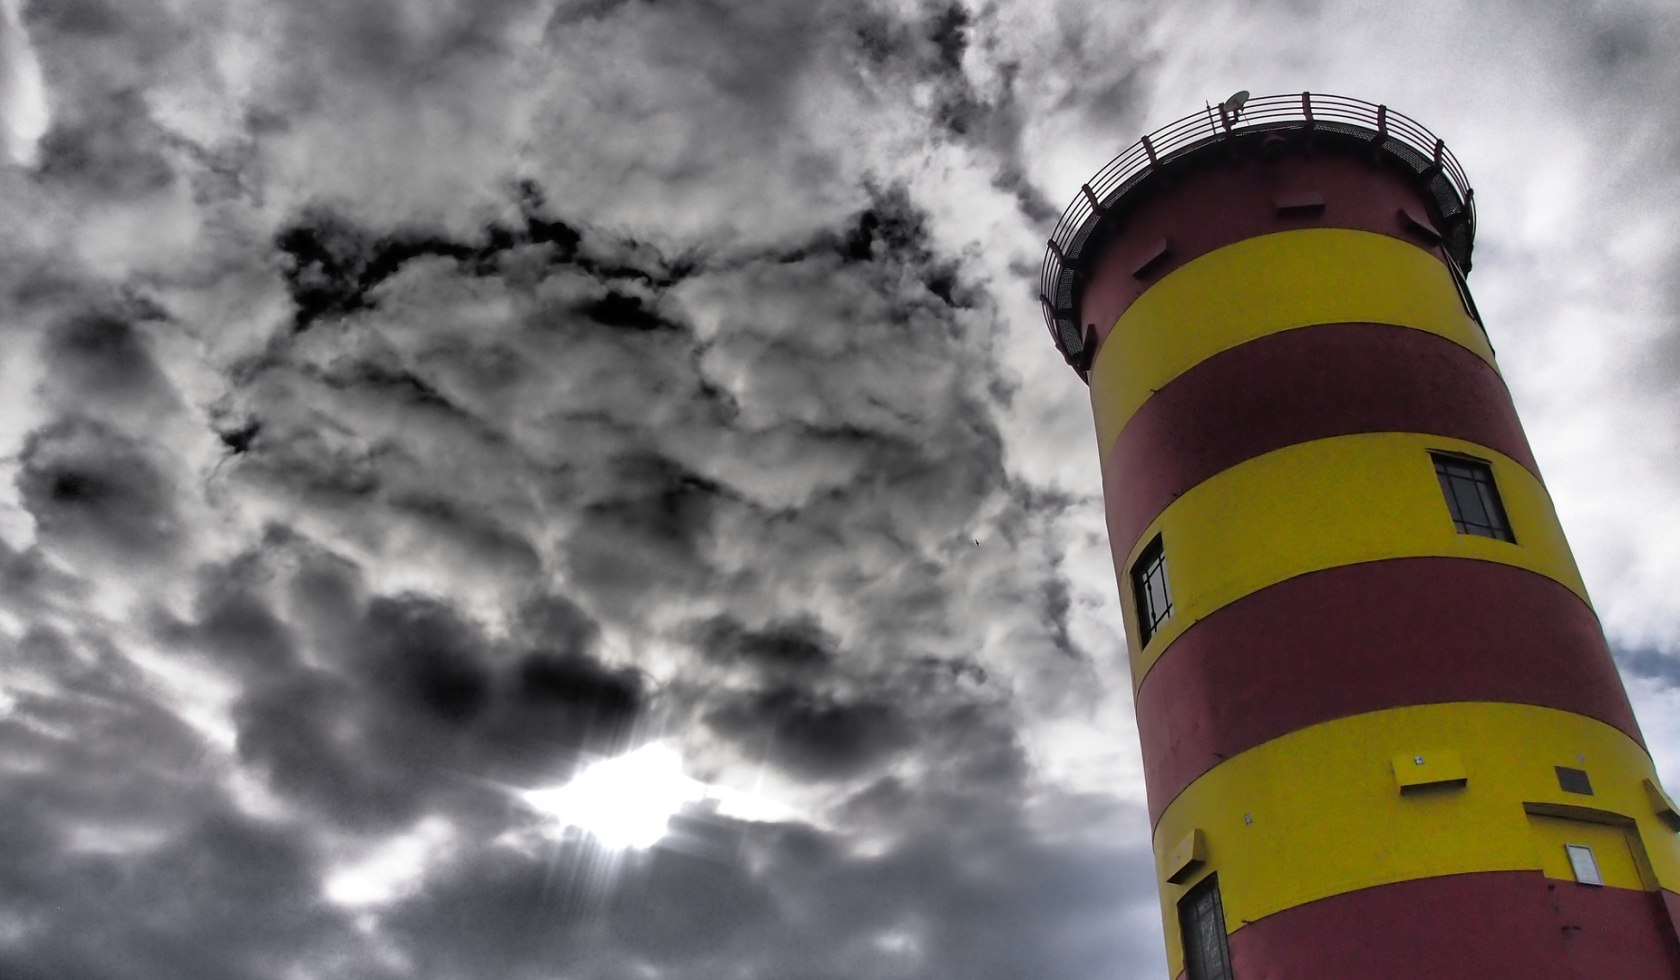 Lighthouse Pilsum cloudy, © Pixabay